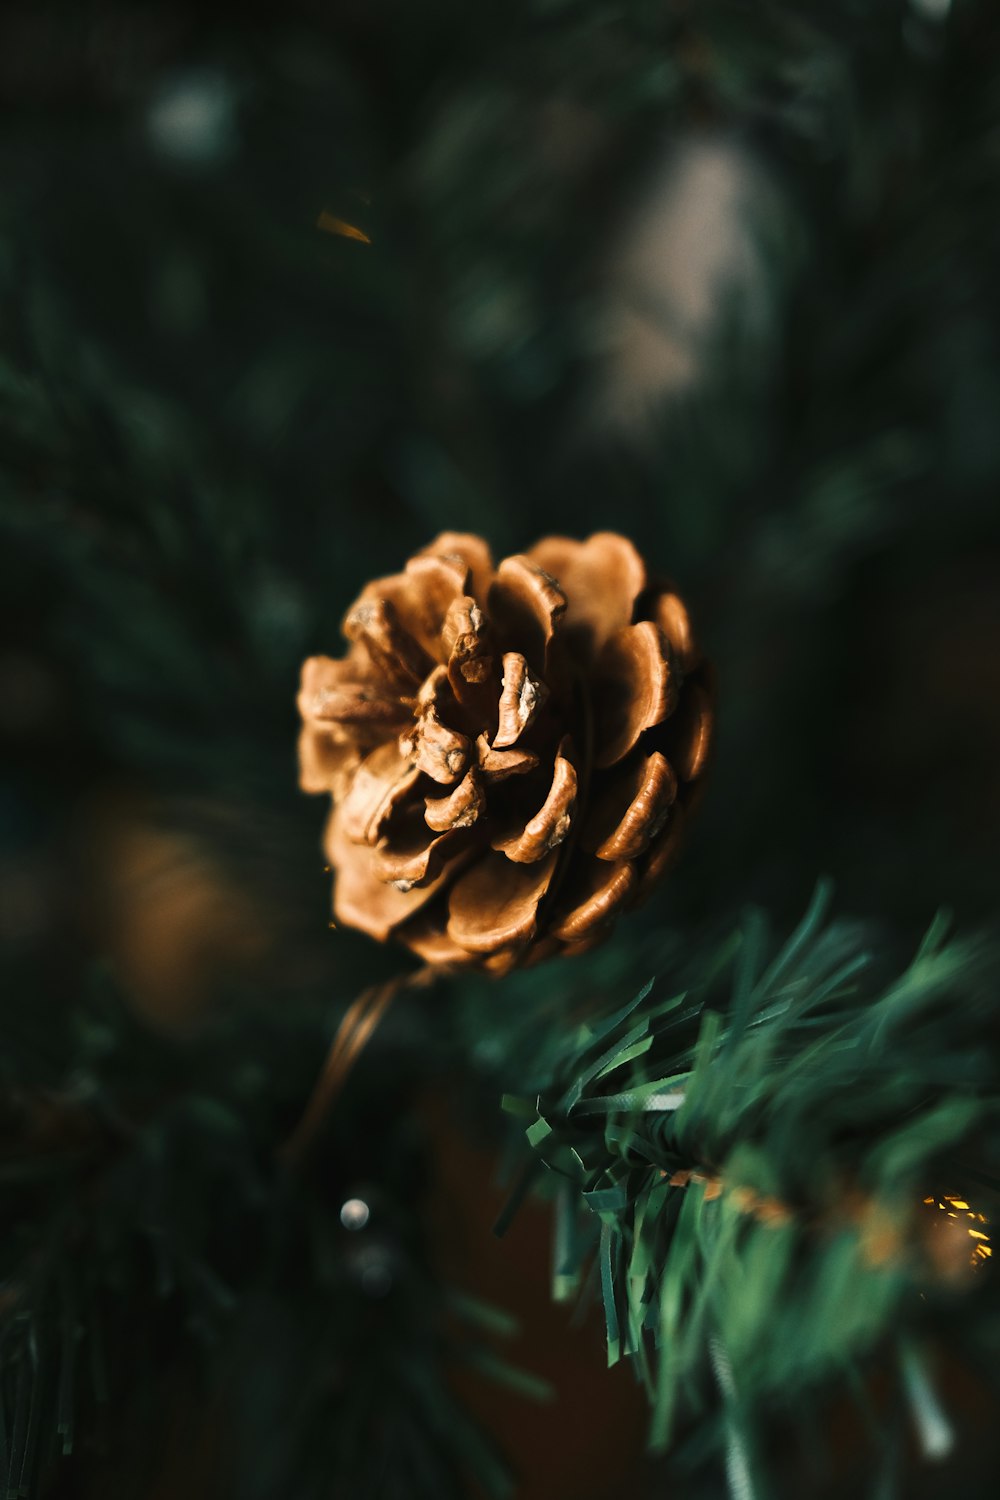 틸트 시프트 렌즈의 갈색 꽃